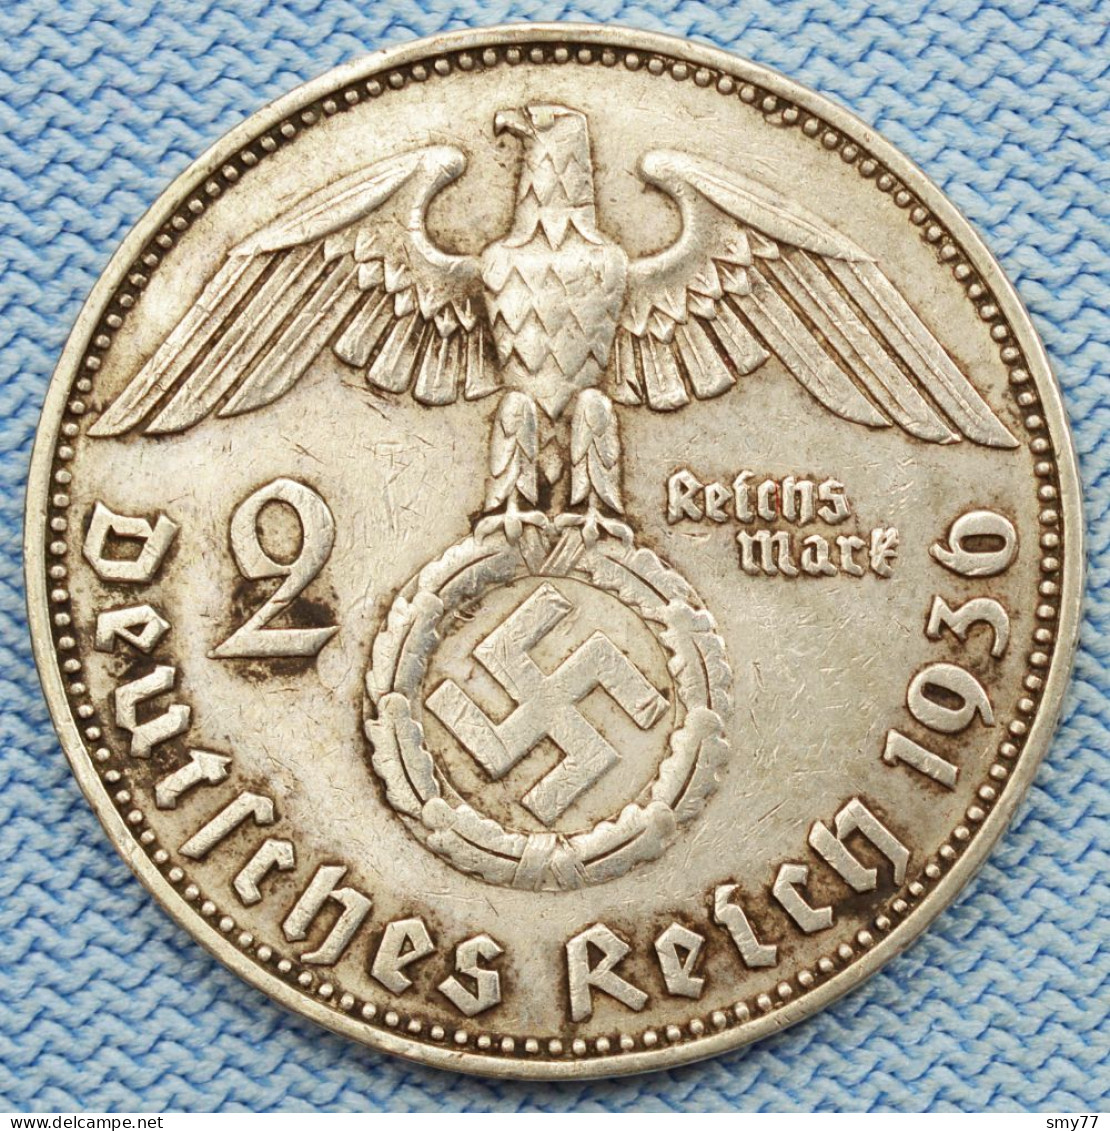 3 Reich • 2 Mark 1936 J •  RARE • Reichsmark • Third Reich • Deutschland / Germany •  [24-661] - 2 Reichsmark